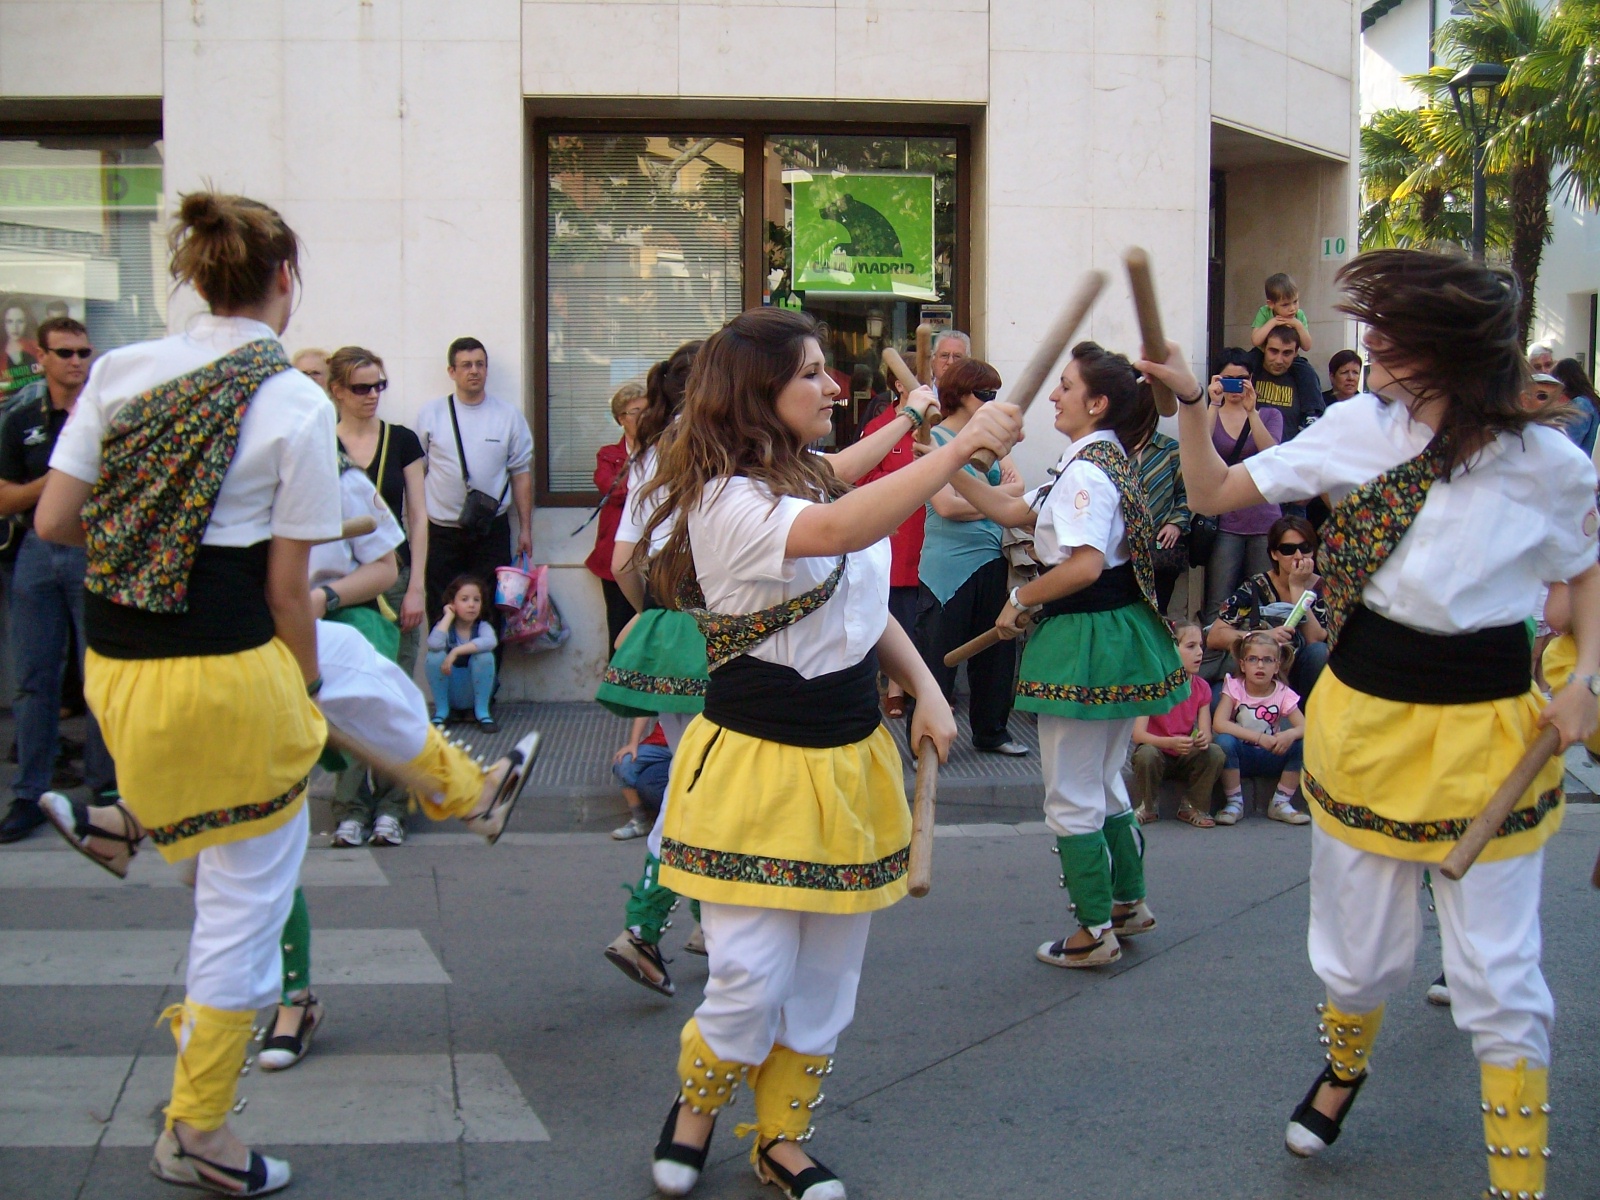 L'Embarcada del Vendrell, la danse des bâtons - Catalunya Experience